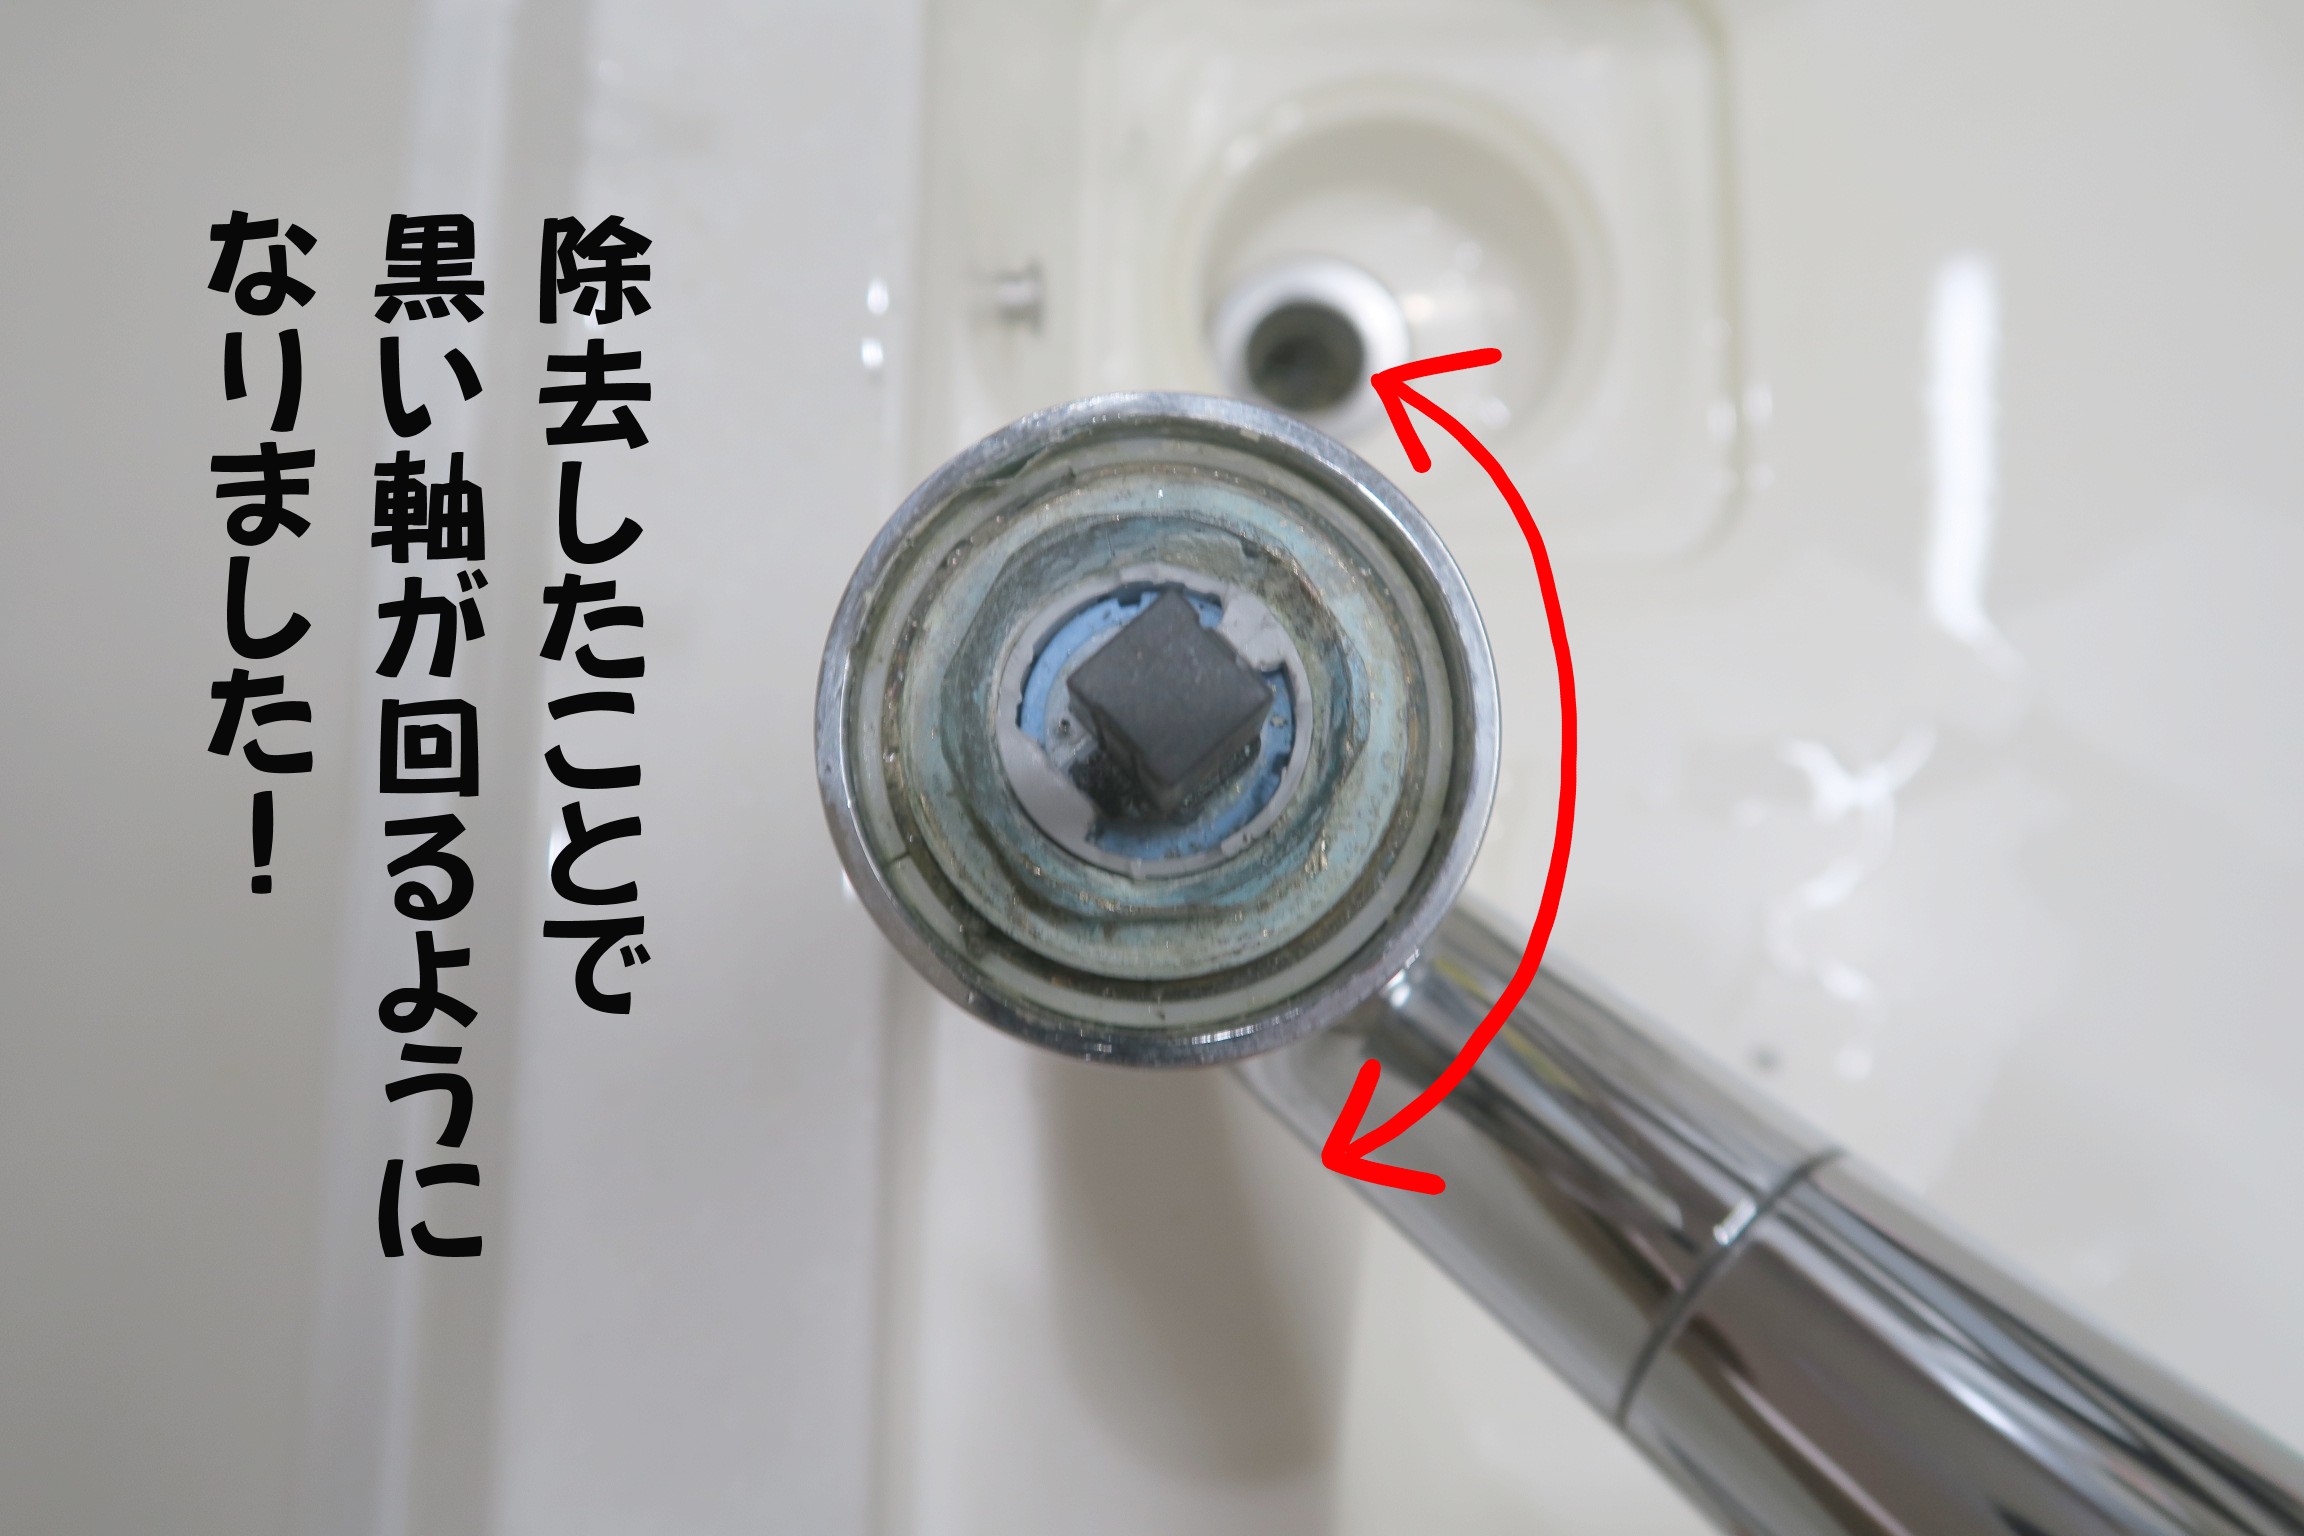 タカギキッチン水栓のセラミックバルブのクリック機構を除去したことで黒軸が回るようになった